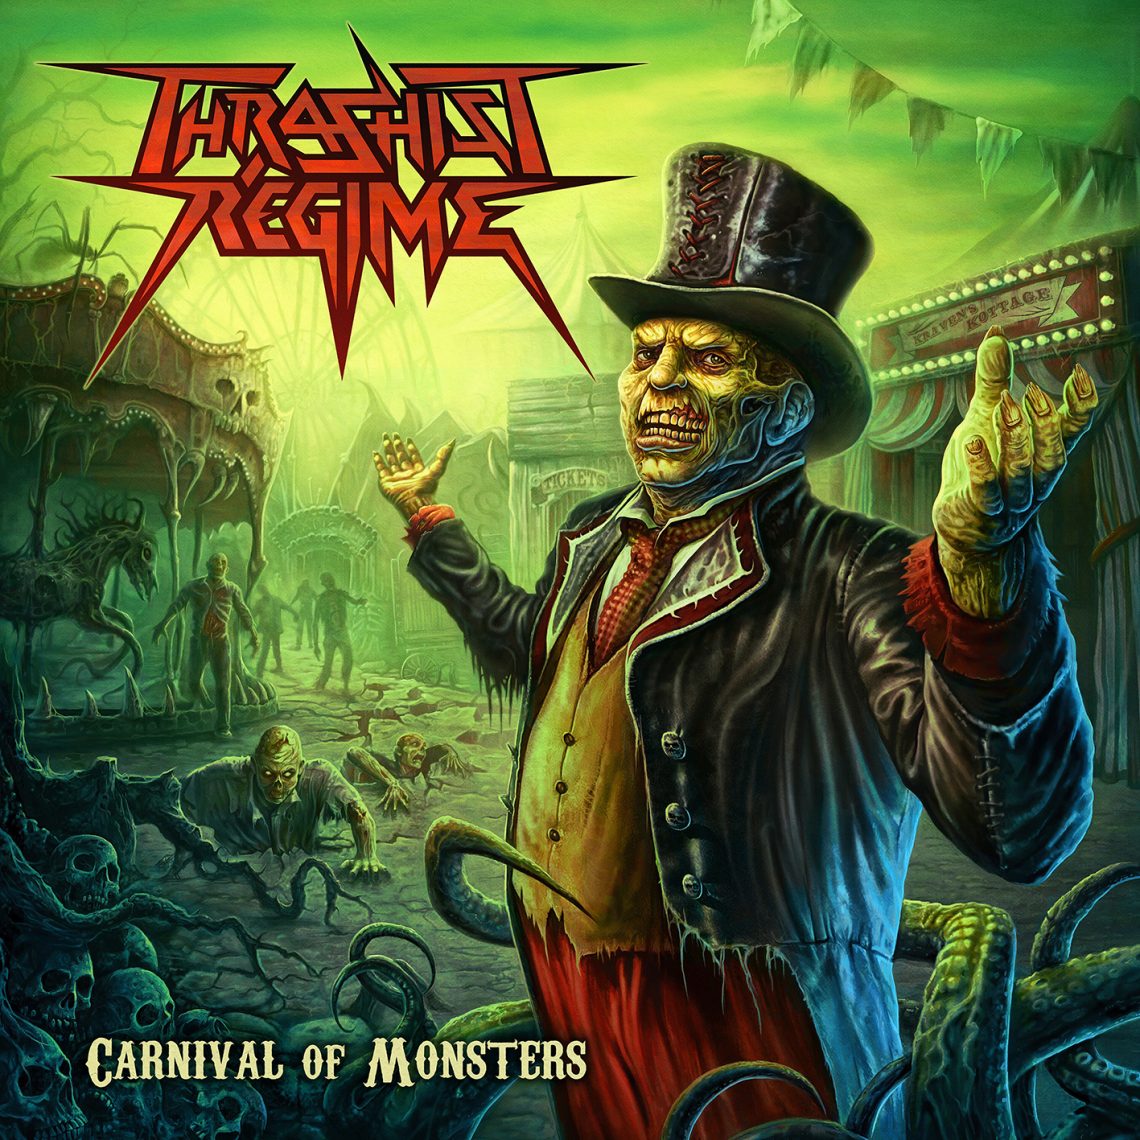 Thrashist Regime – Carnival of Monsters